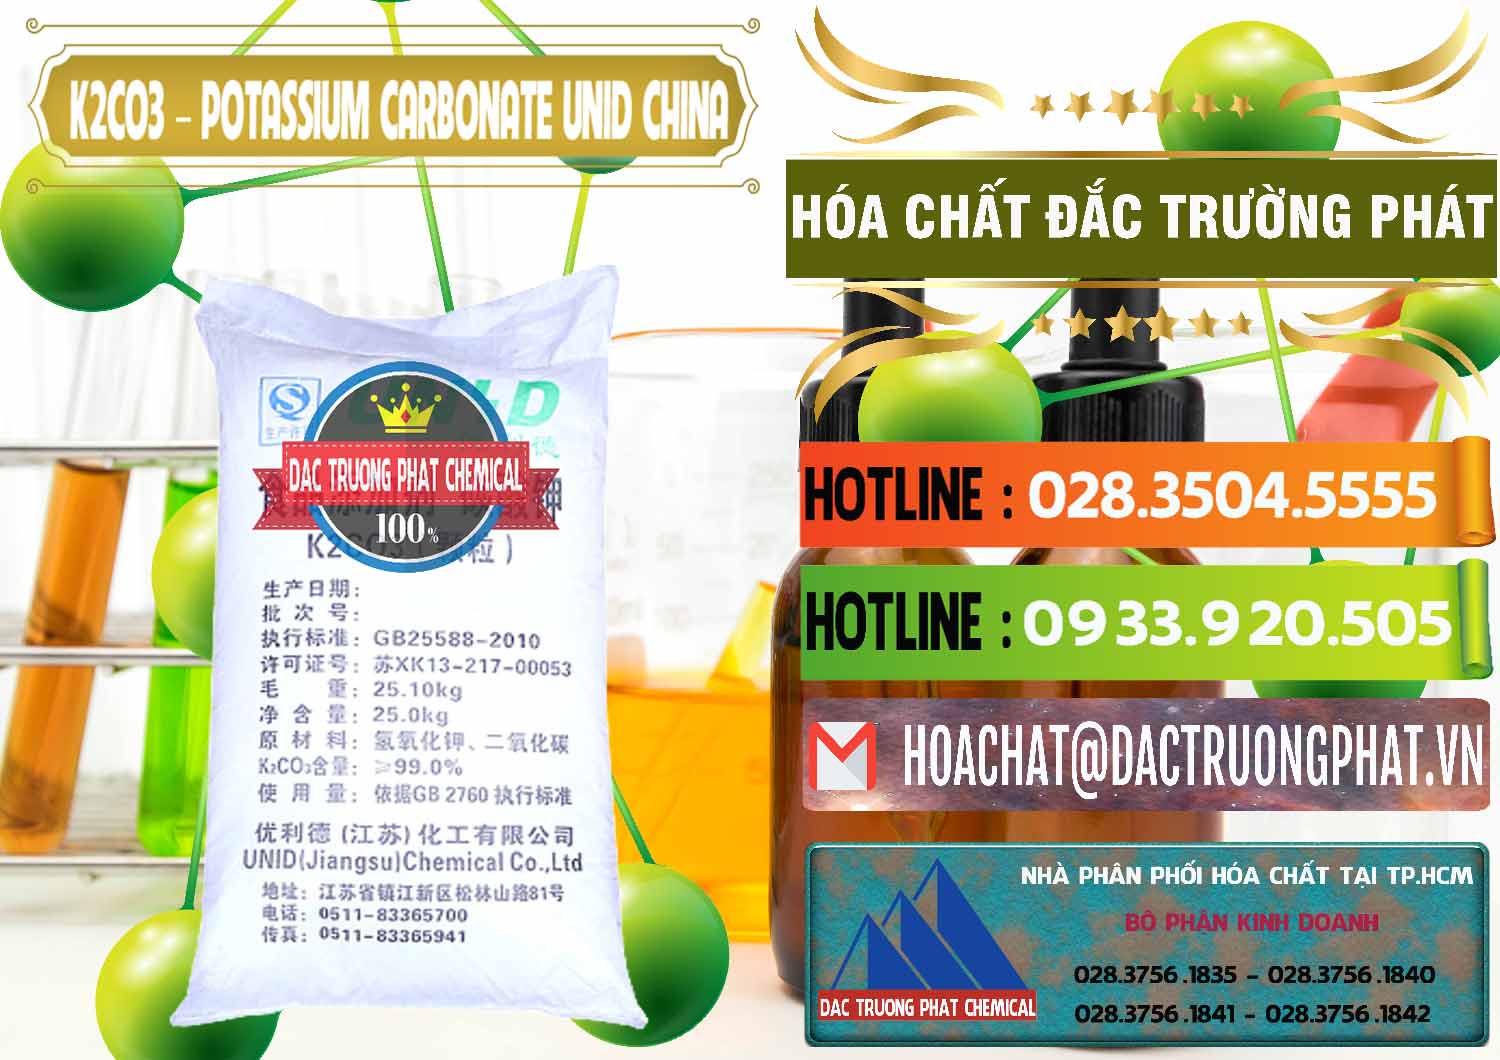 Nơi kinh doanh và bán K2Co3 – Potassium Carbonate UNID Trung Quốc China - 0475 - Cty cung cấp _ kinh doanh hóa chất tại TP.HCM - cungcaphoachat.com.vn